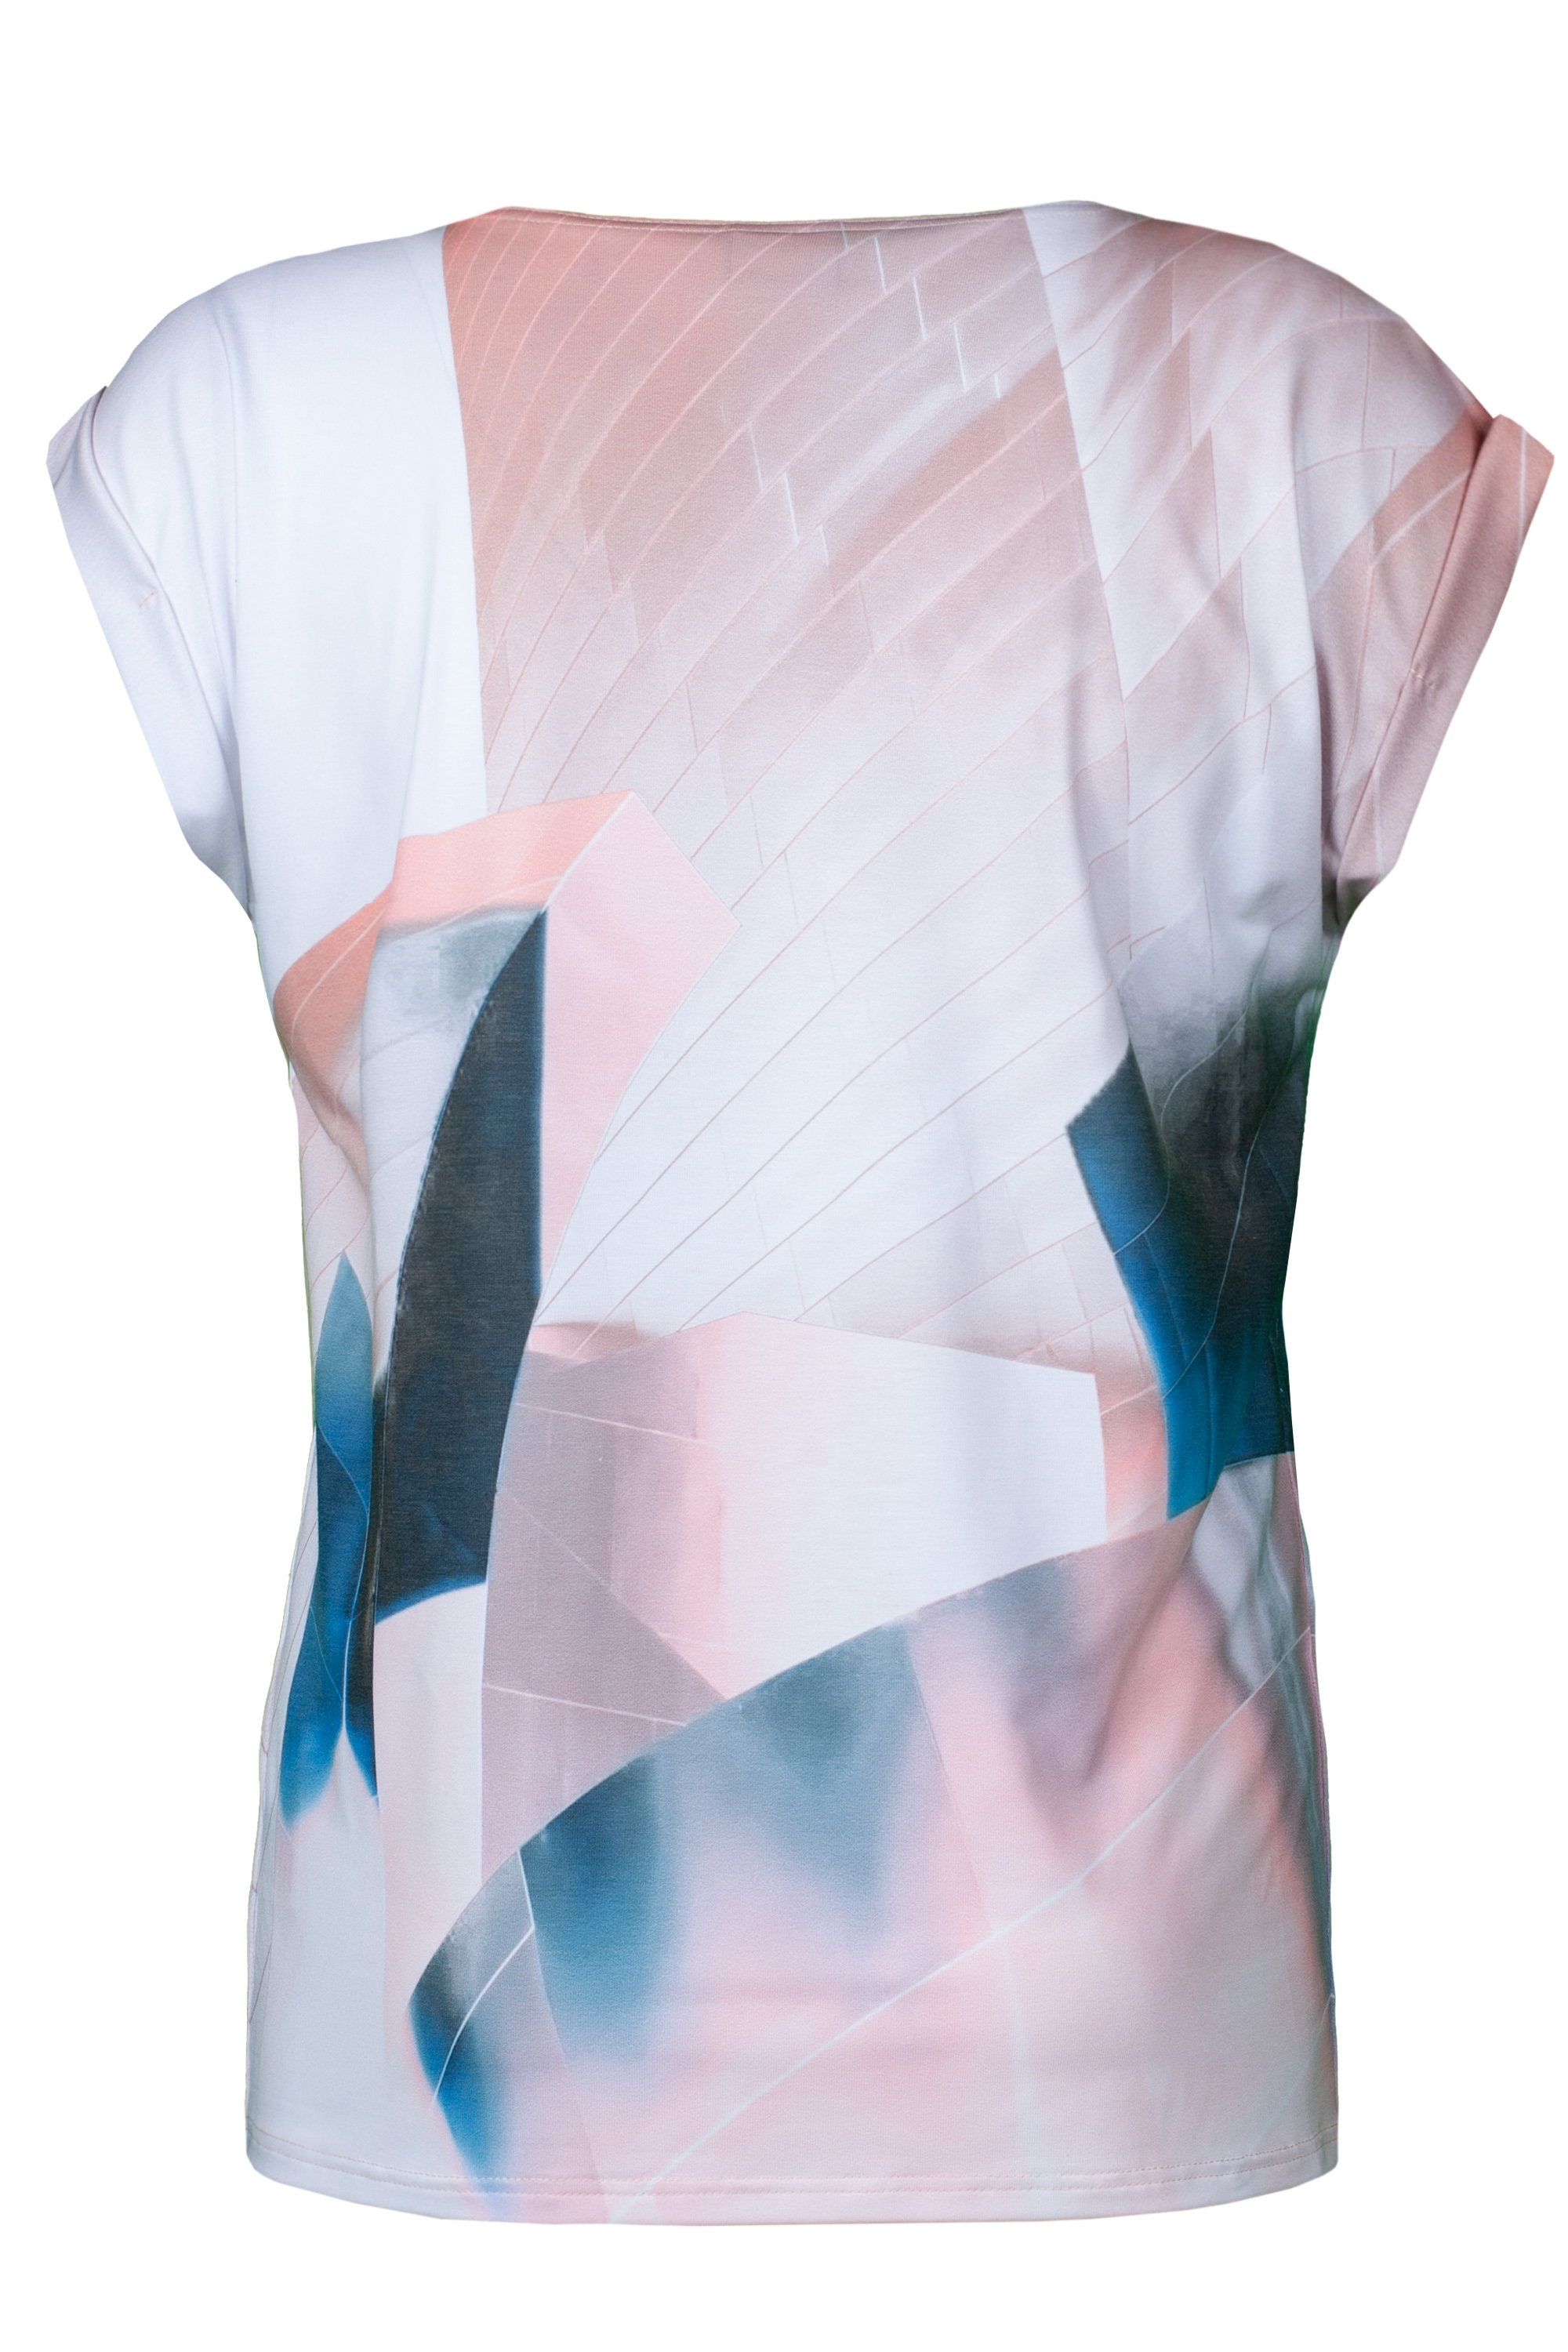 Rückansicht T-Shirt Wendular mit abstraktem Print in Rosa, Weiß und Blau